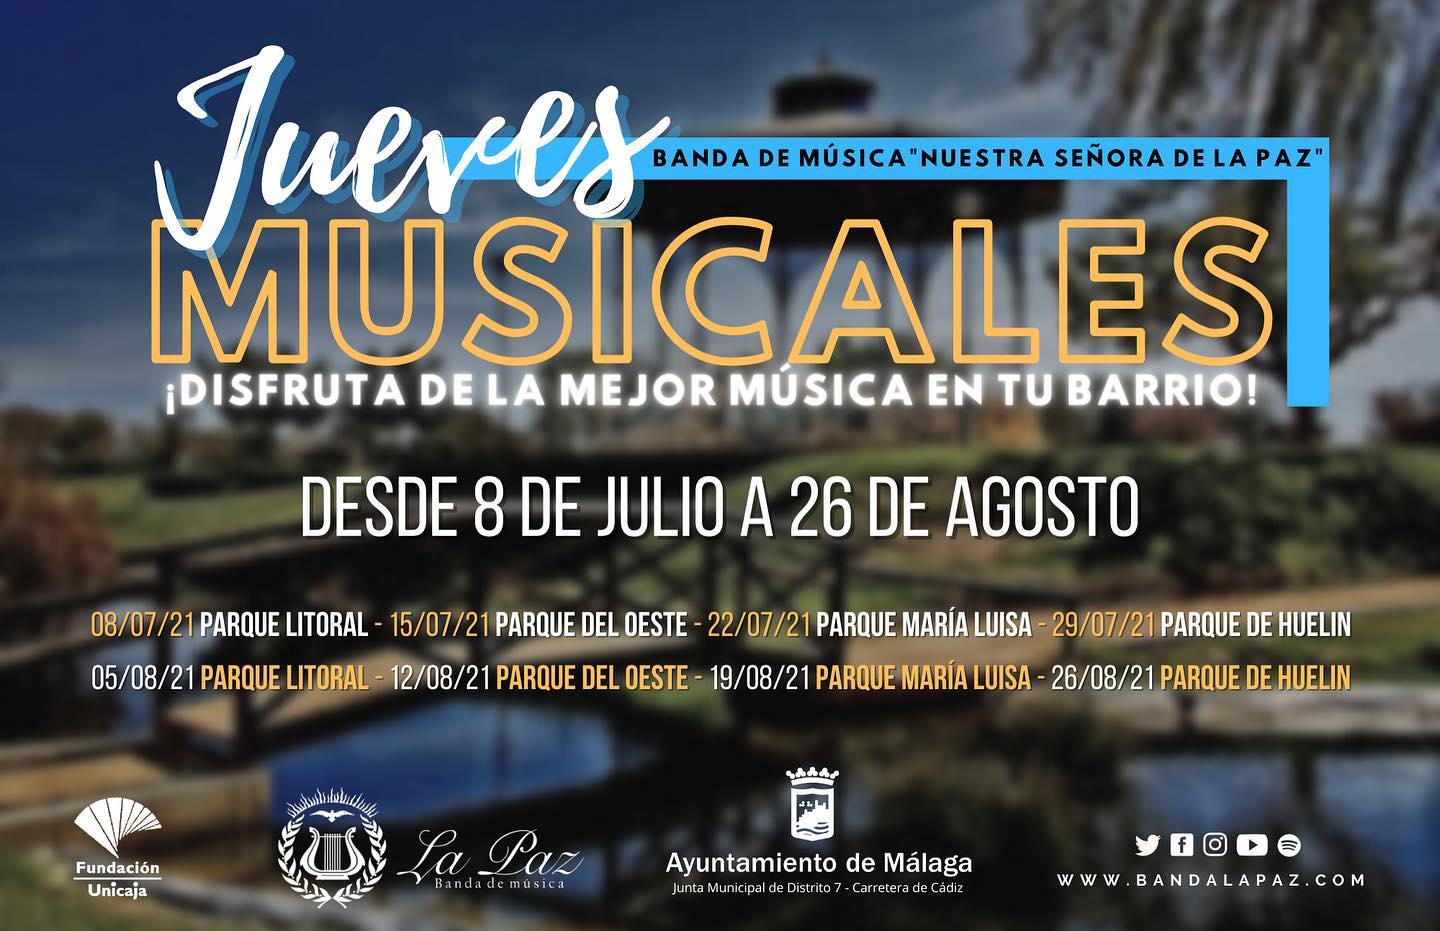 Jueves musicales: actividades gratis en familia en Carretera Cádiz